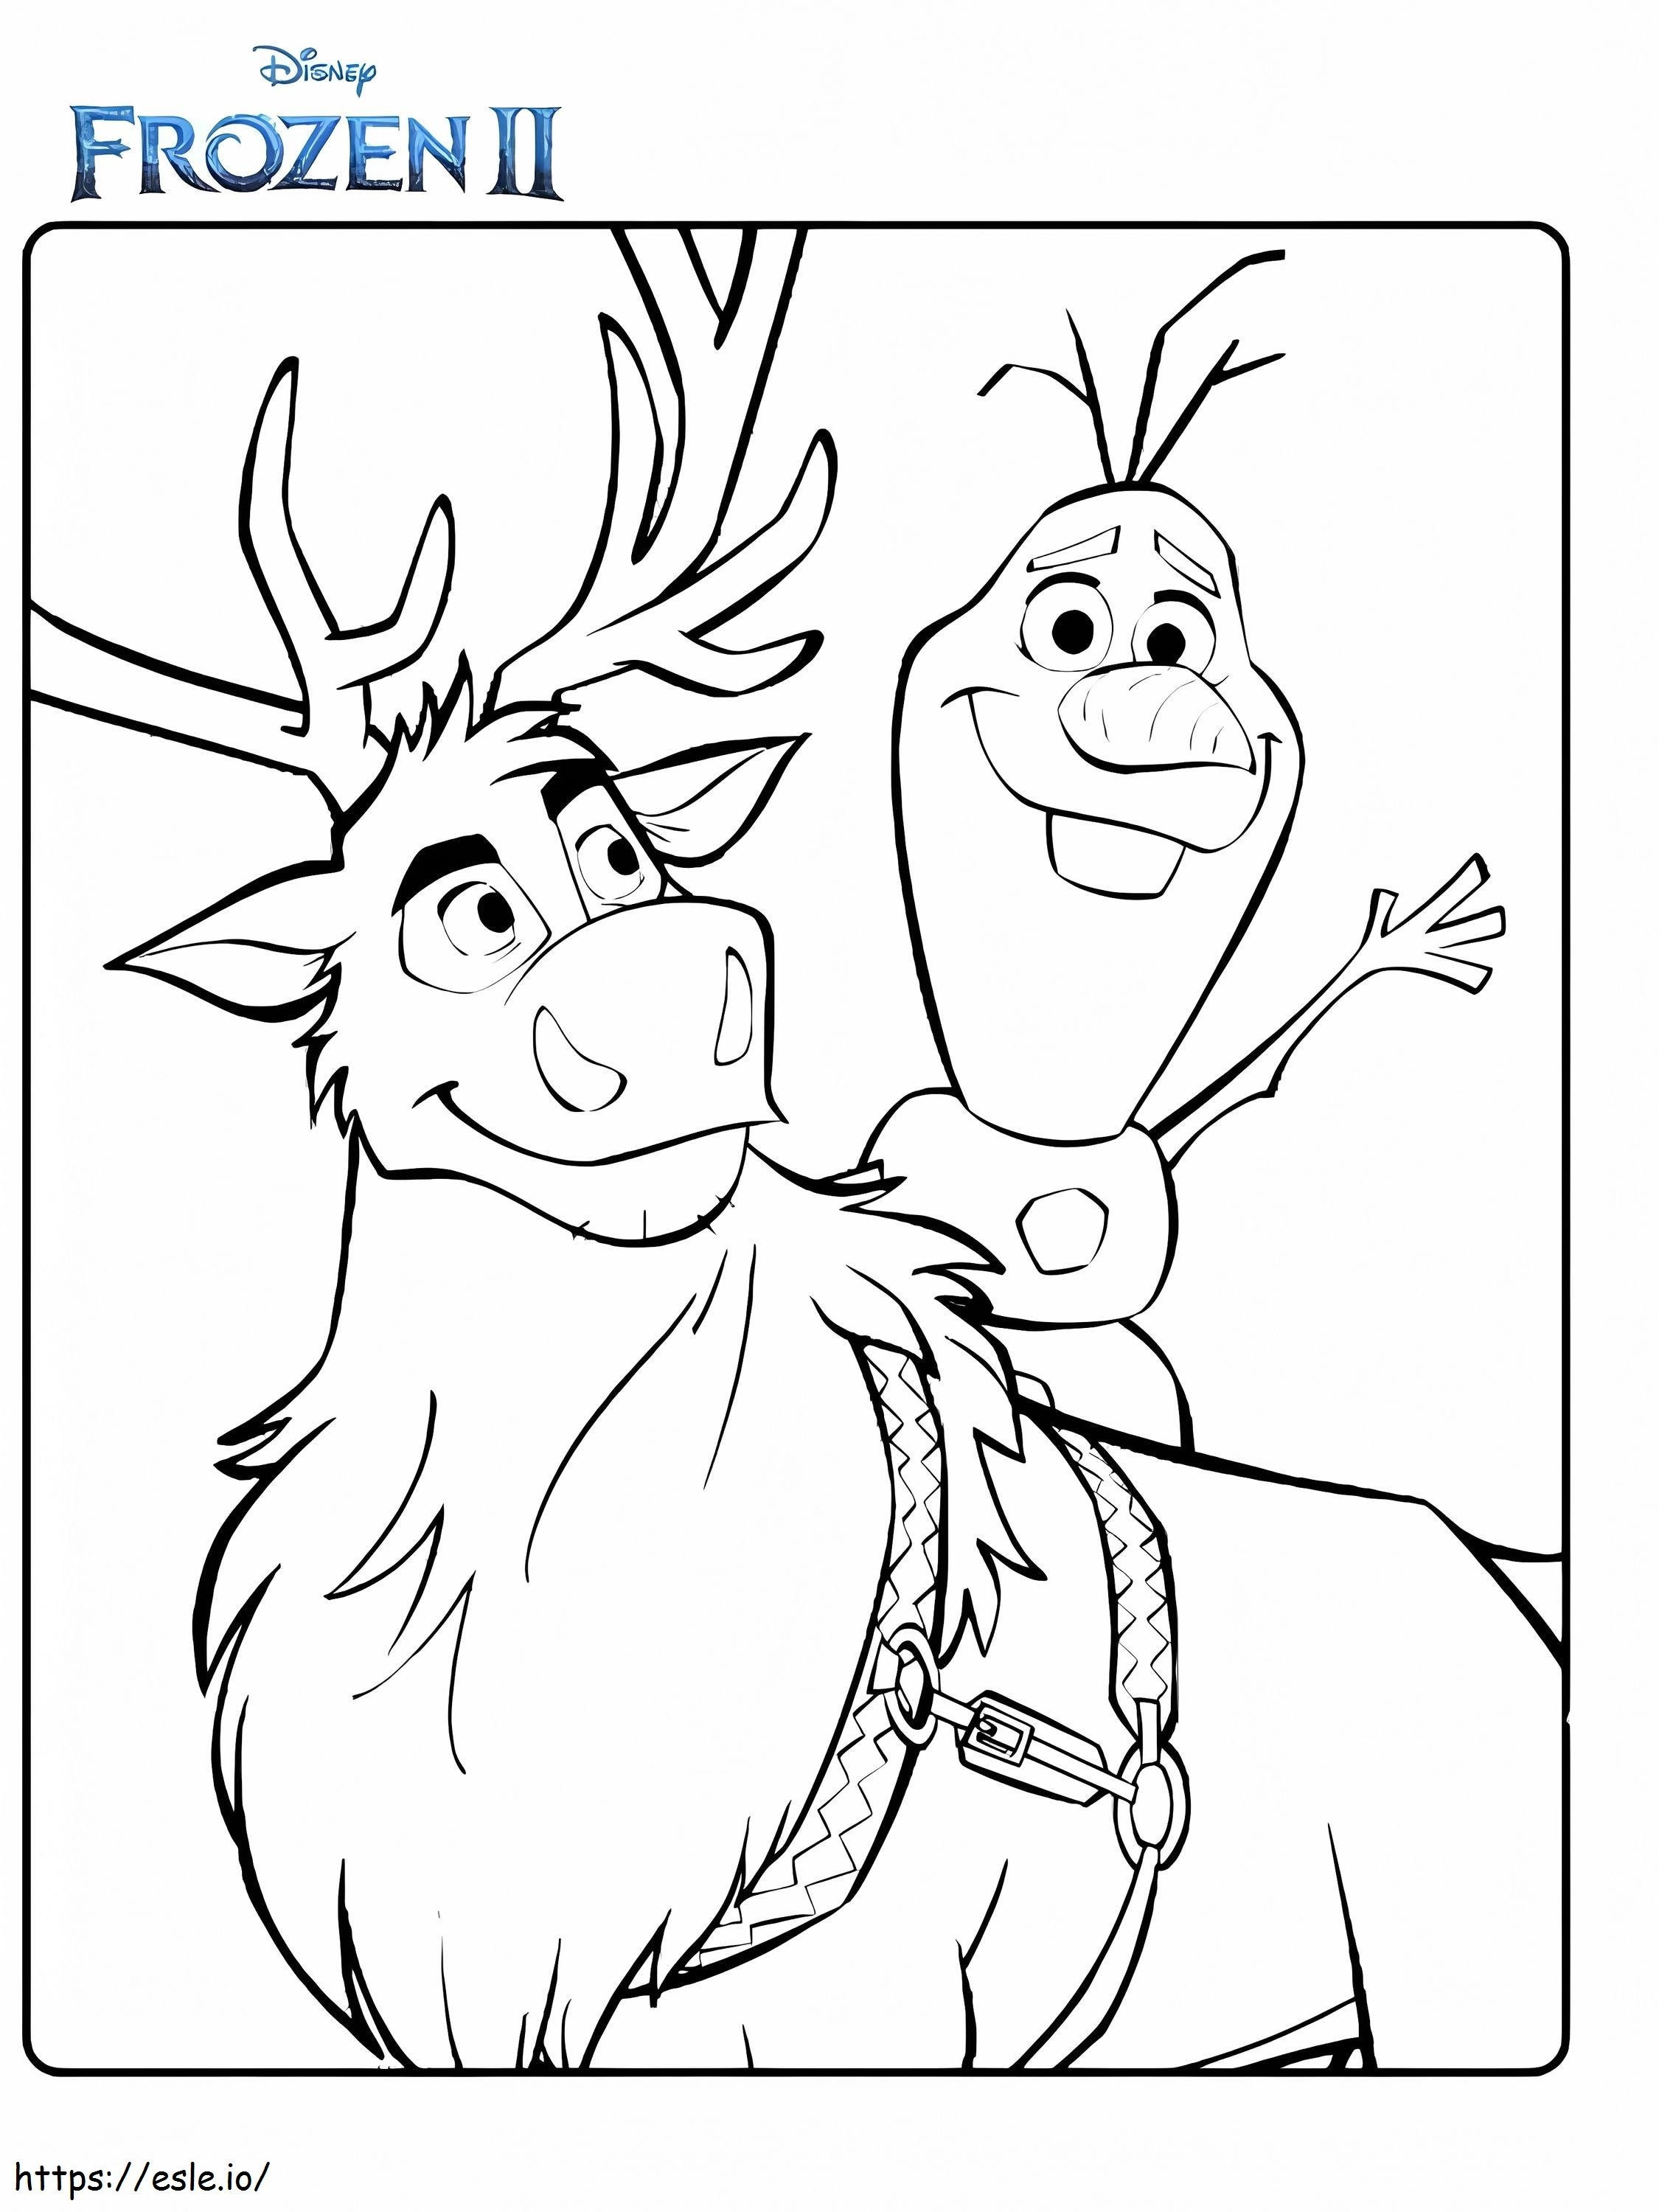 Olaf e Sven Frozen 2 Disegni da colorare da colorare